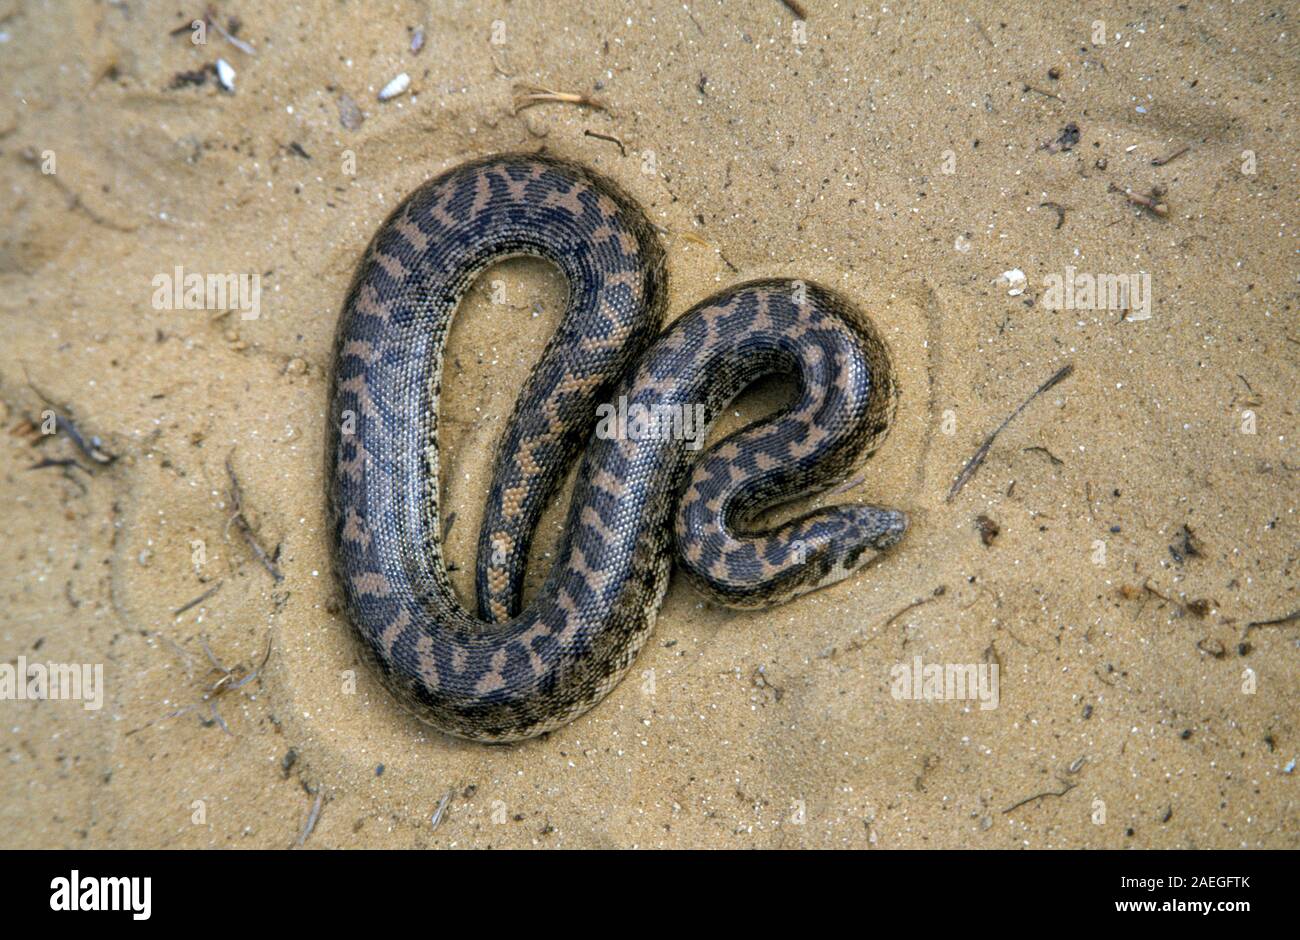 Sable (javelot boa Eryx jaculus) dans le sable. Ce serpent est trouvé en Europe orientale, le Caucase, le Moyen-Orient et l'Afrique. Photographié en Israël Banque D'Images